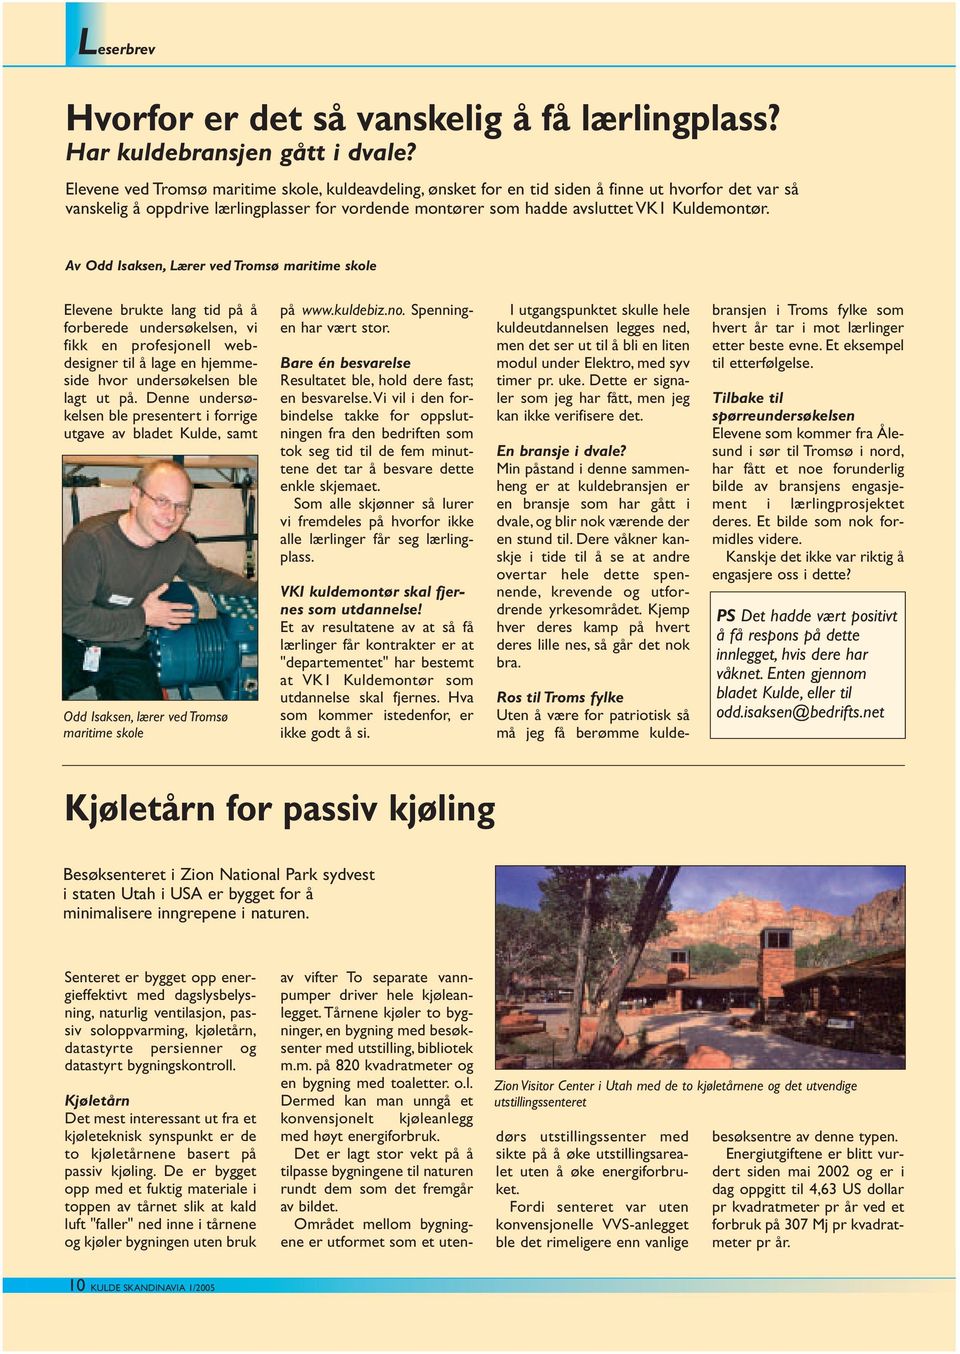 Av Odd Isaksen, Lærer ved Tromsø maritime skole Elevene brukte lang tid på å forberede undersøkelsen, vi fikk en profesjonell webdesigner til å lage en hjemmeside hvor undersøkelsen ble lagt ut på.